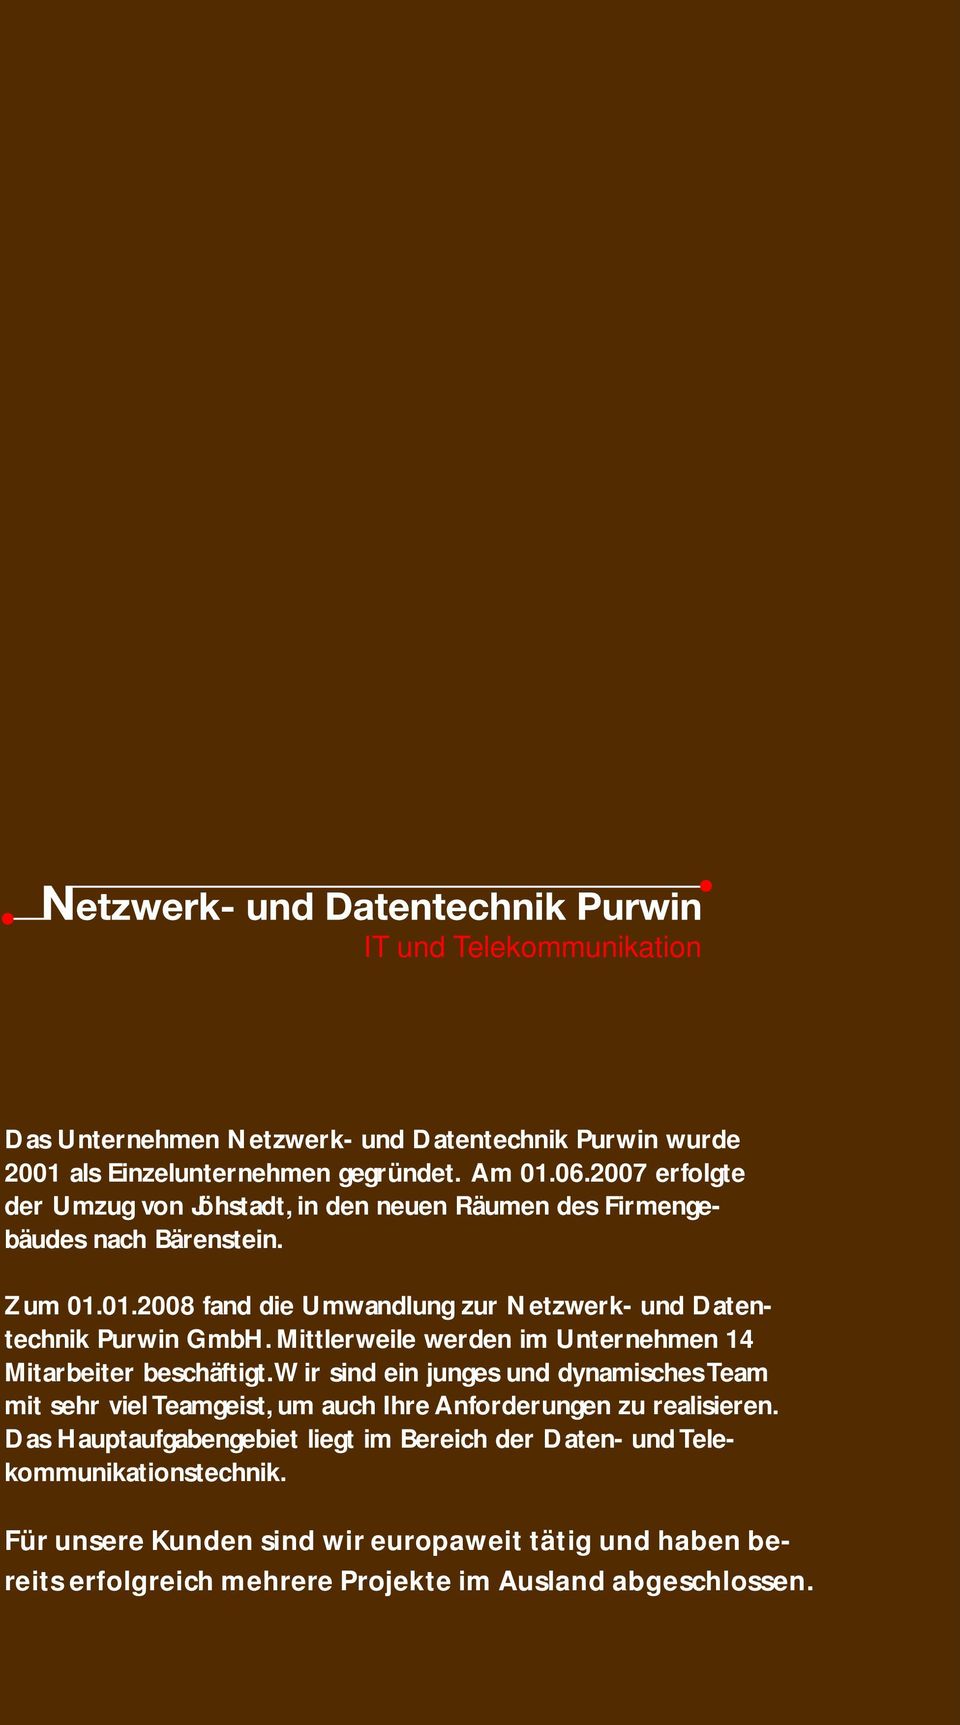 01.2008 fand die Umwandlung zur Netzwerk- und Datentechnik Purwin GmbH. Mittlerweile werden im Unternehmen 14 Mitarbeiter beschäftigt.